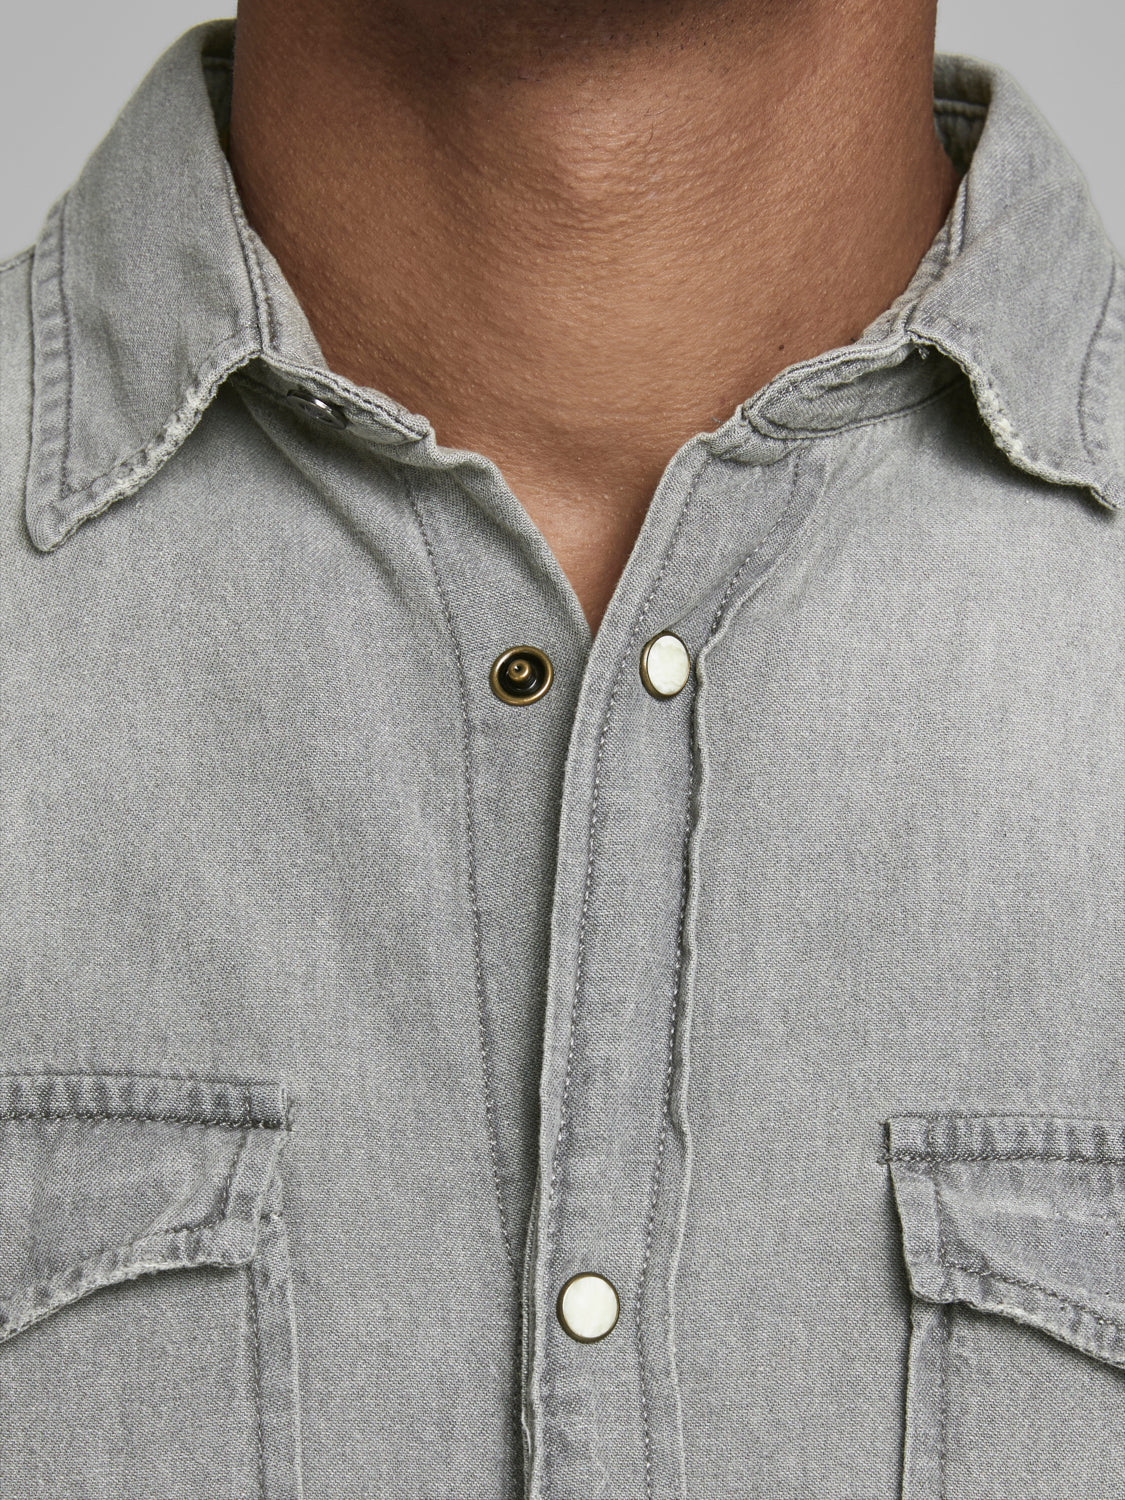 JJESHERIDAN Shirts - light grey denim